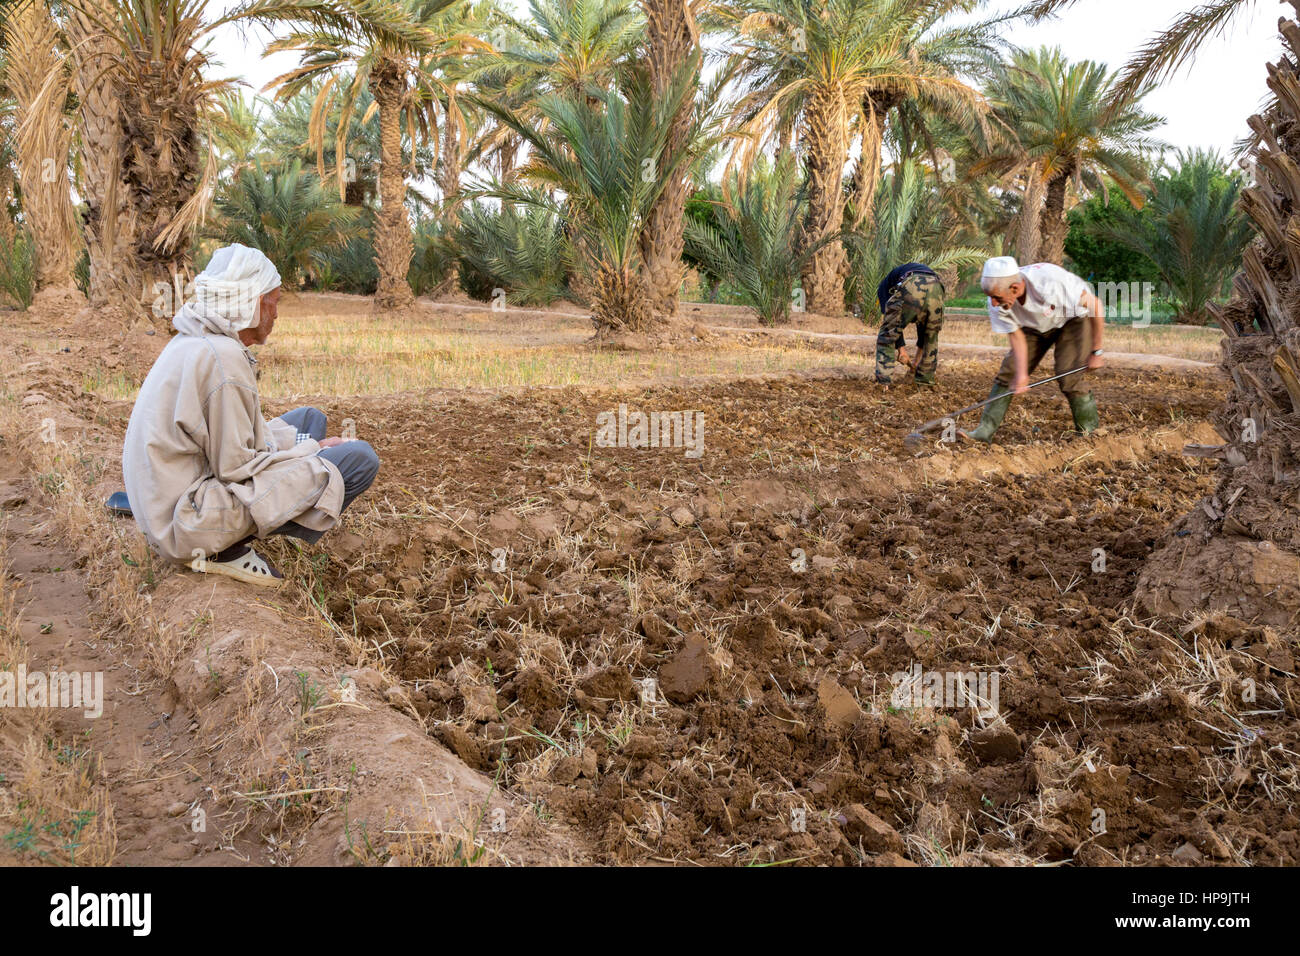 Merzouga, Marocco. Gli agricoltori zappando il suolo nelle loro tenute, in preparazione per la semina. I raccolti possono essere piantati sotto palme da dattero. Foto Stock